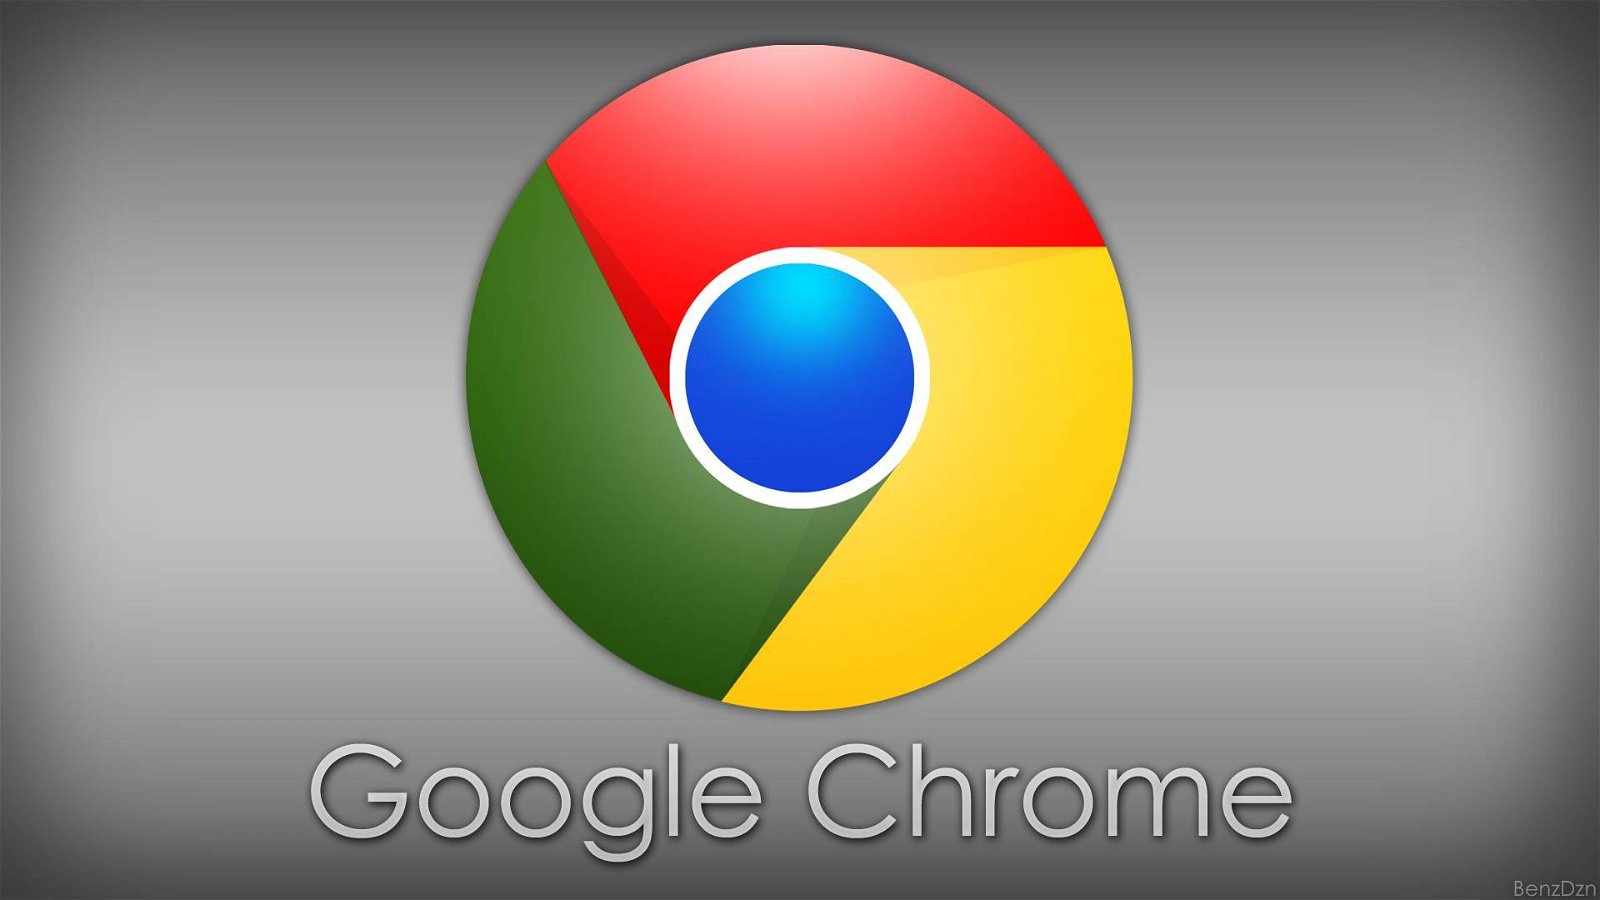 Immagine di Miliardi di utenti crittografici a rischio per colpa di Google Chrome